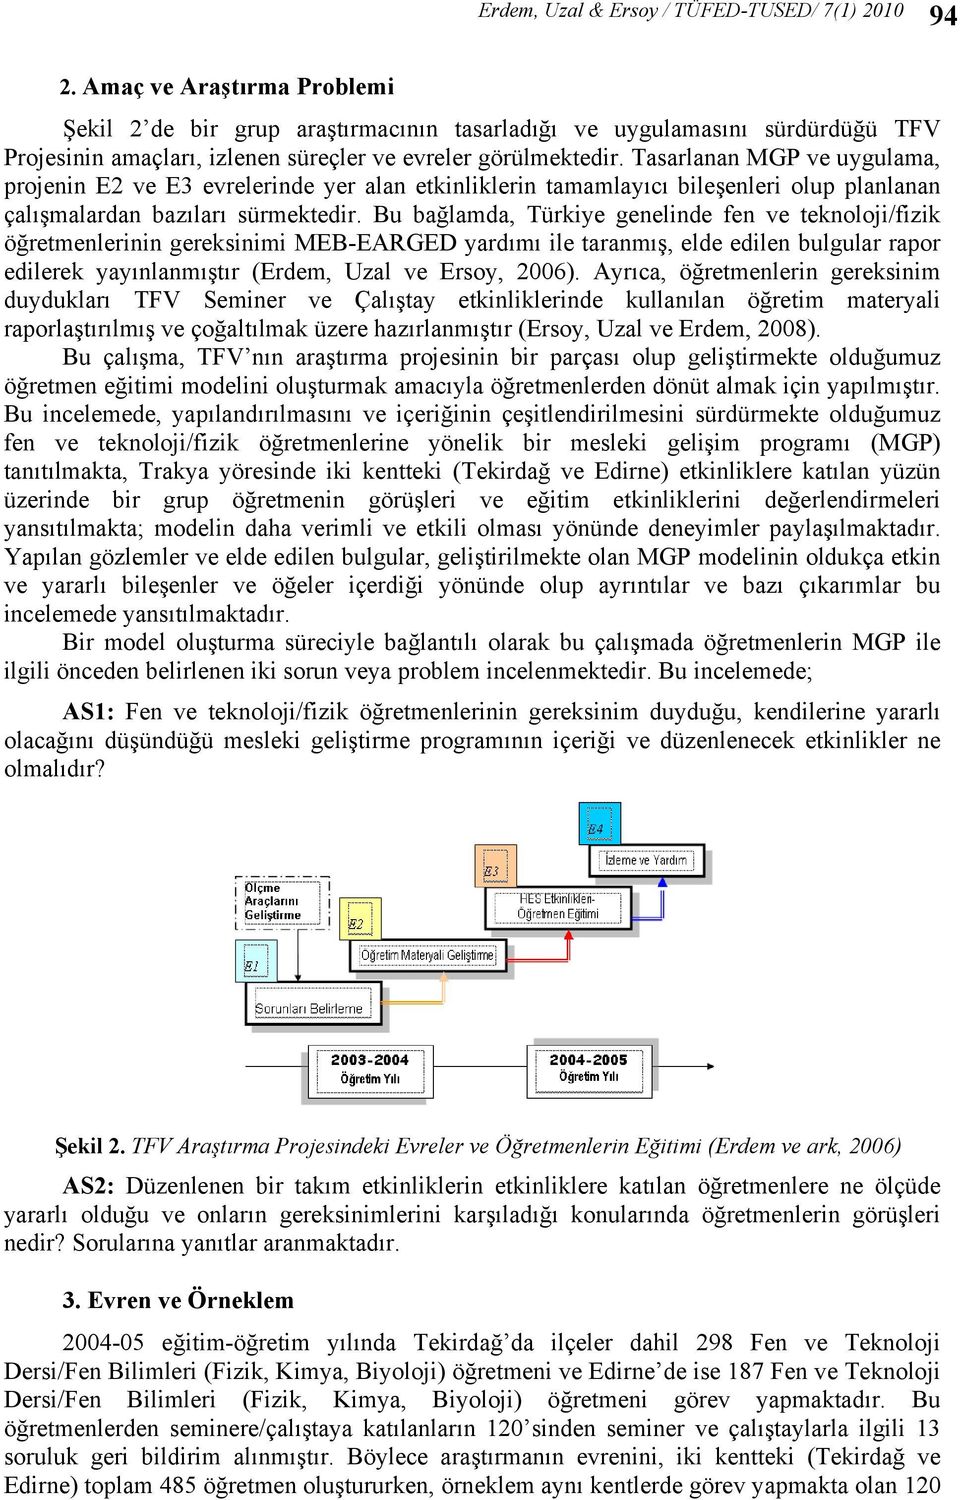 Bu bağlamda, Türkiye genelinde fen ve teknoloji/fizik öğretmenlerinin gereksinimi MEB-EARGED yardımı ile taranmış, elde edilen bulgular rapor edilerek yayınlanmıştır (Erdem, Uzal ve Ersoy, 2006).